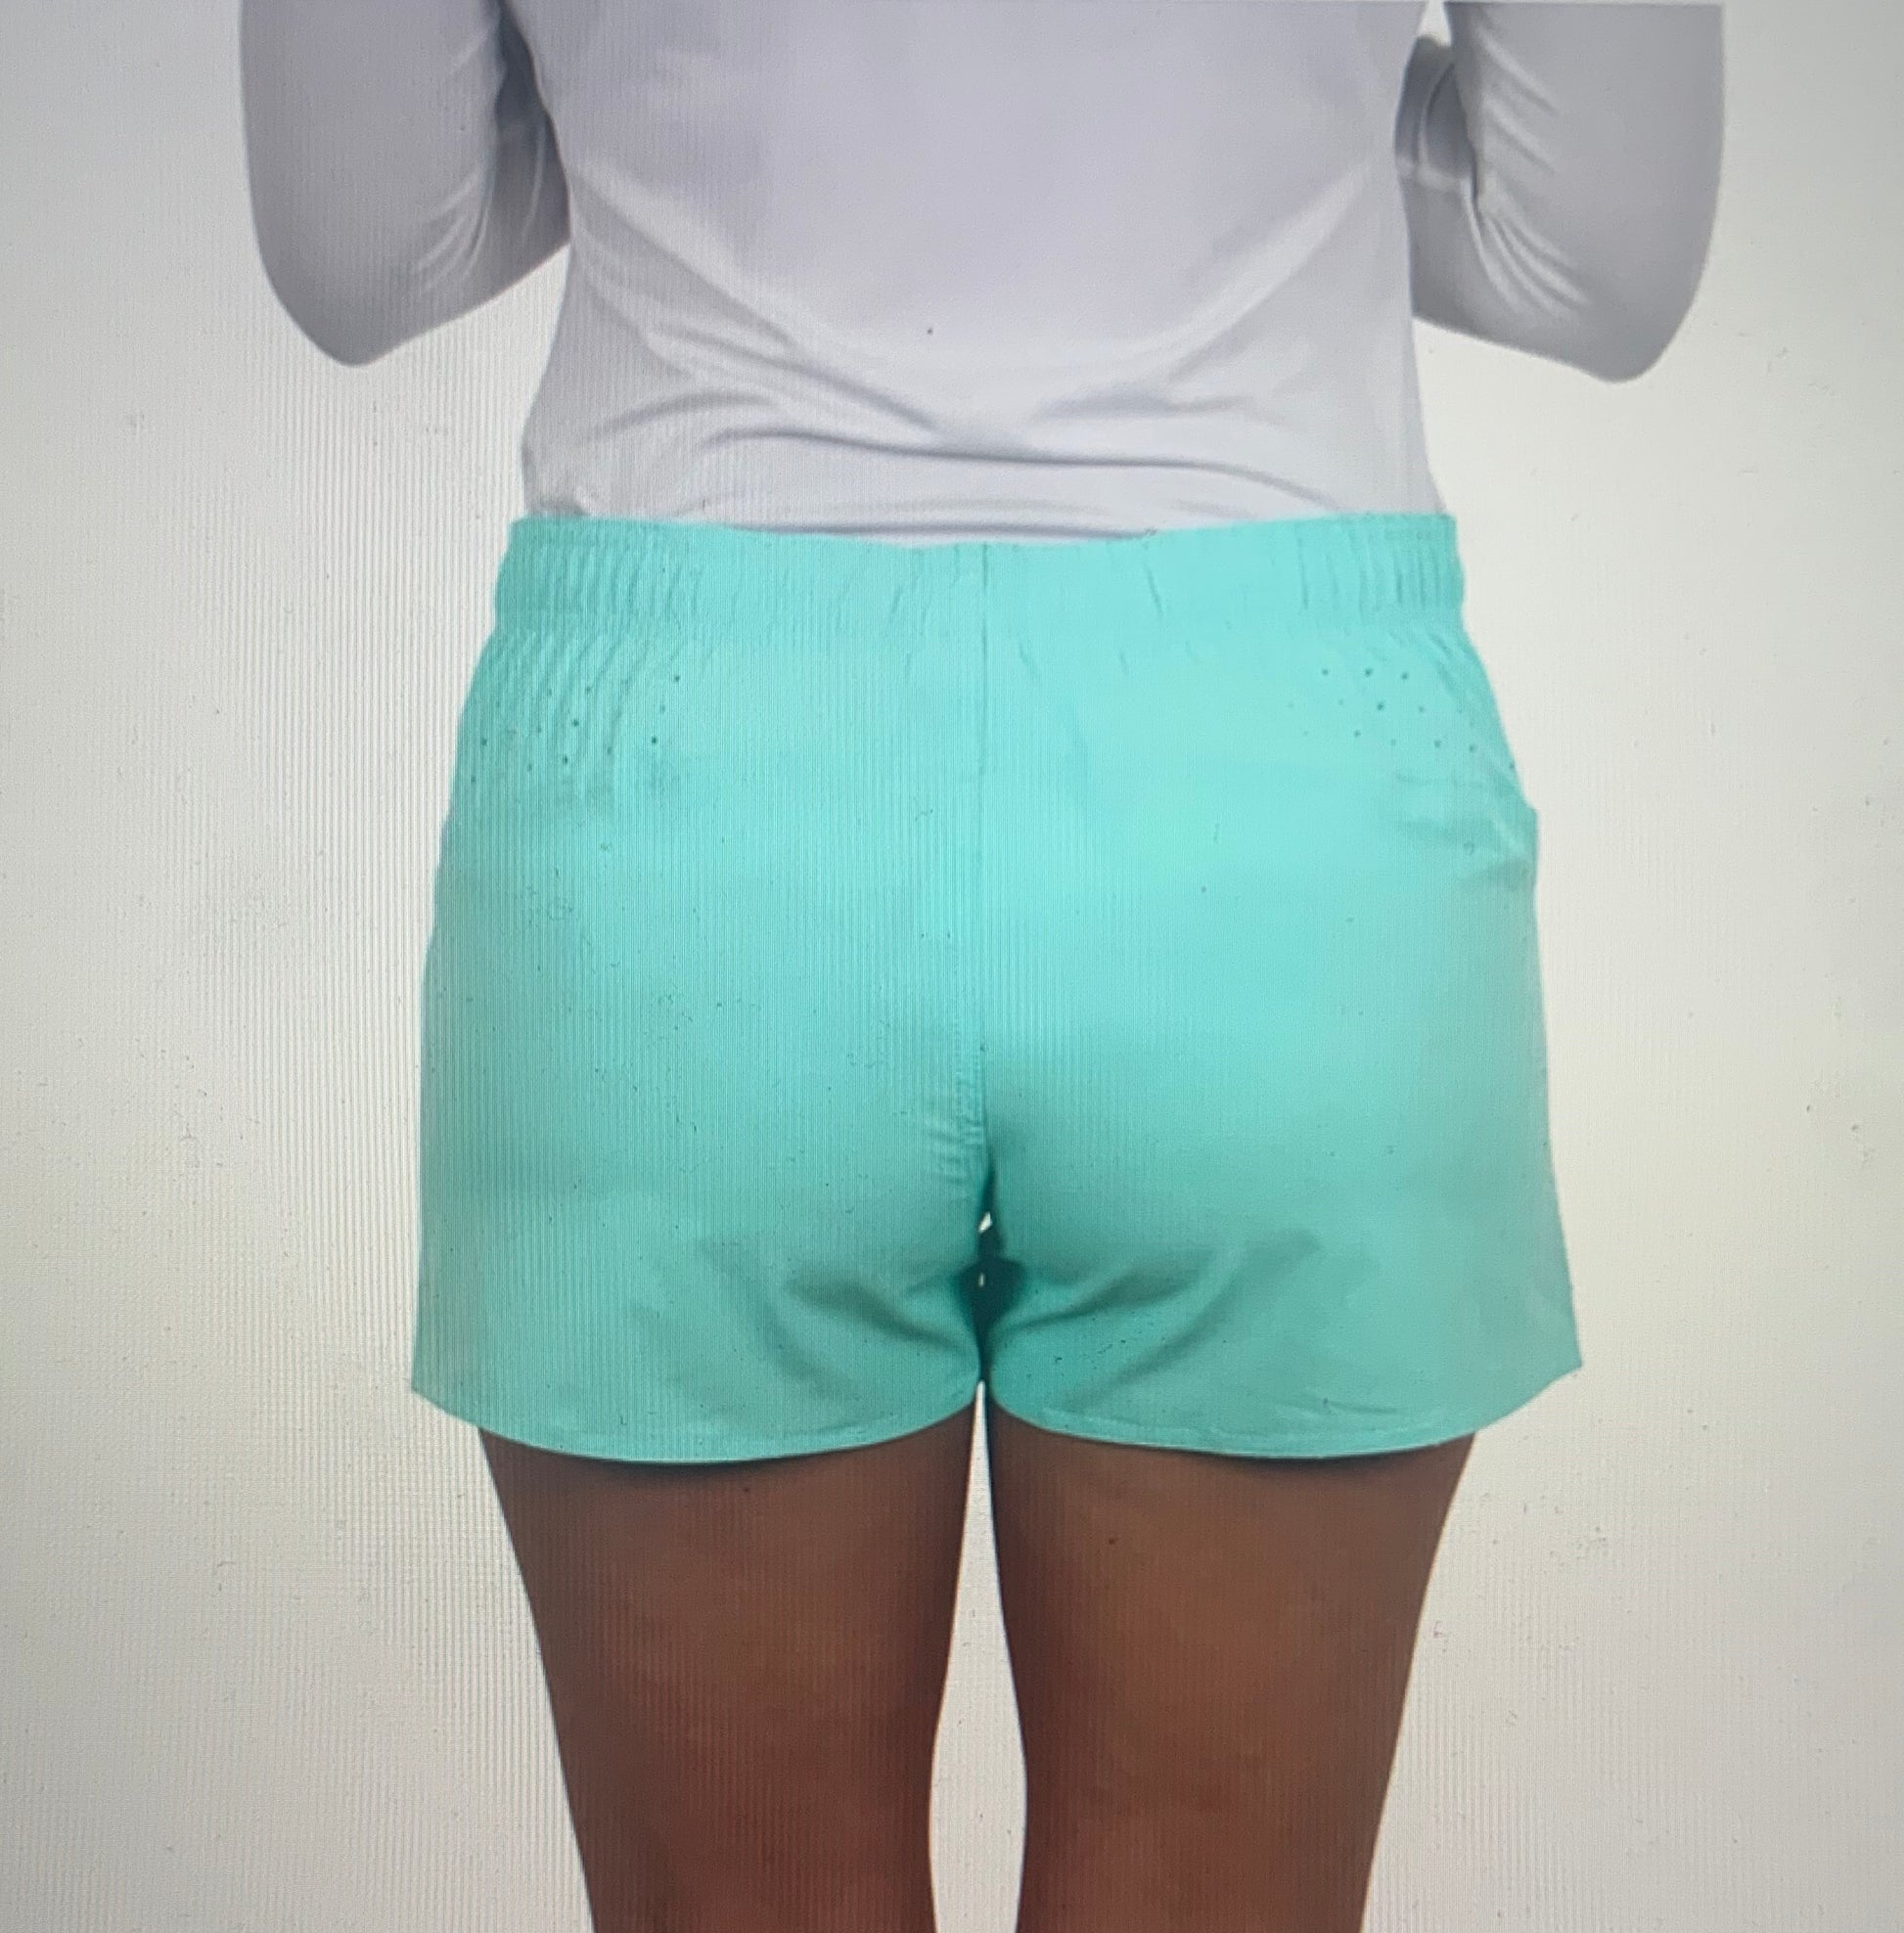 Microbyte Women's Fishing Shorts  Fishing shorts, Shorts, Fishing outfits